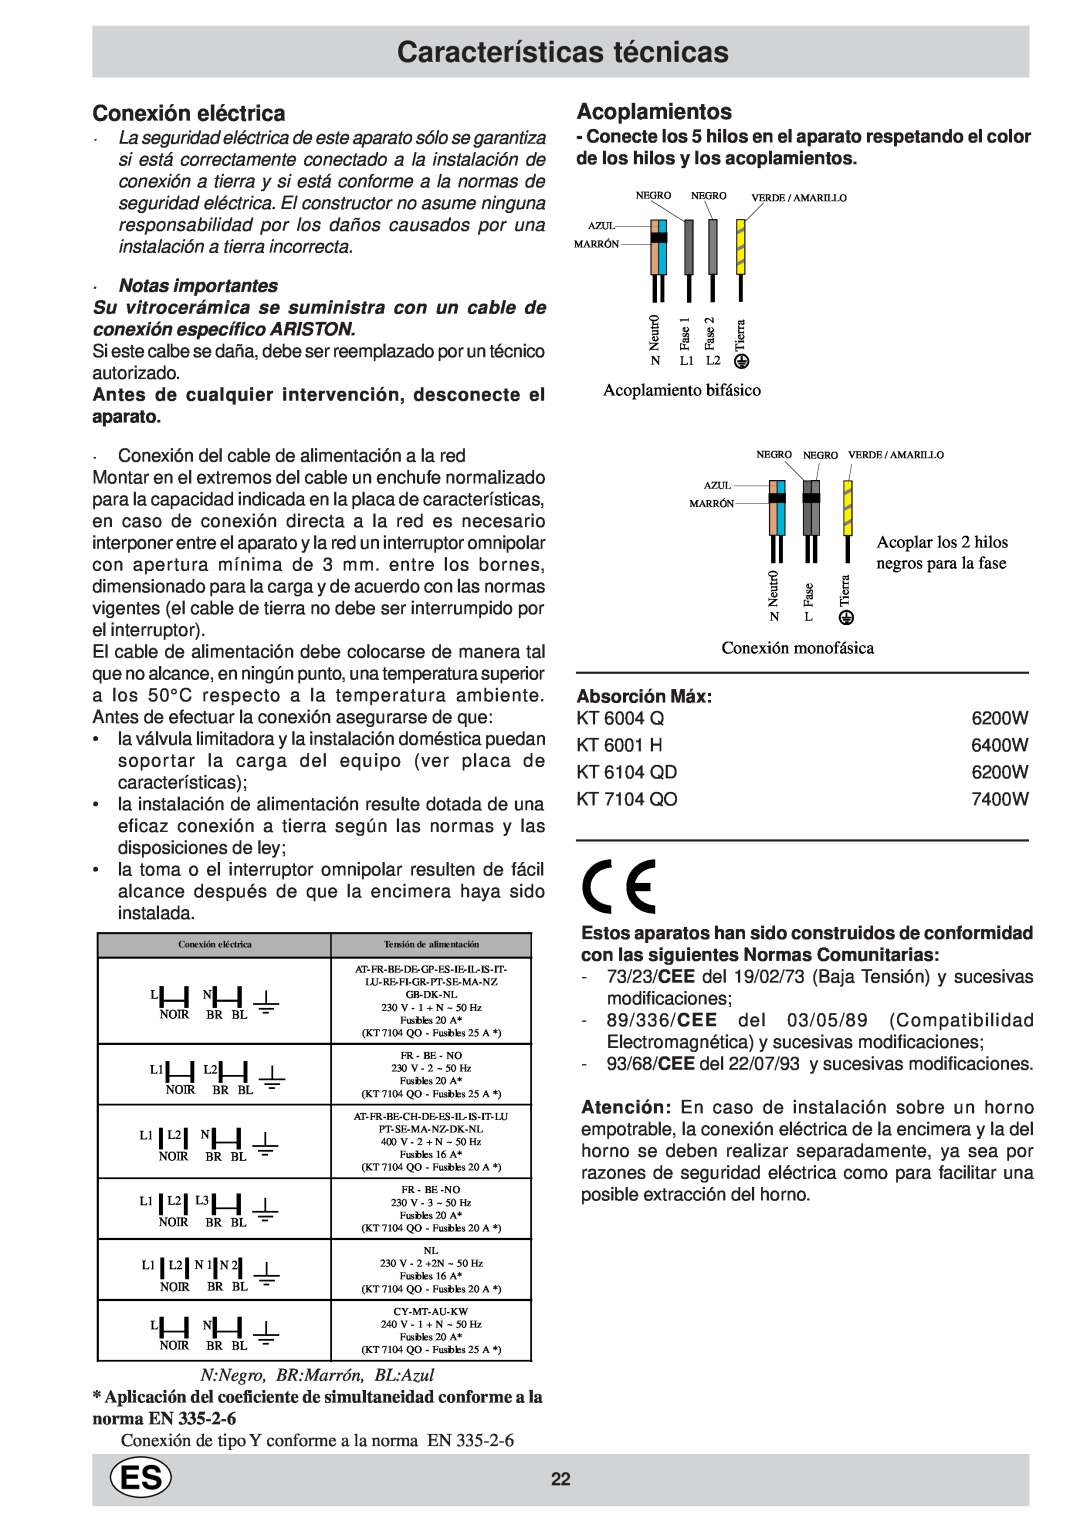 Ariston KT 8104 QO Características técnicas, Conexión eléctrica, Acoplamientos, N Negro, BR Marrón, BL Azul, Absorción Máx 